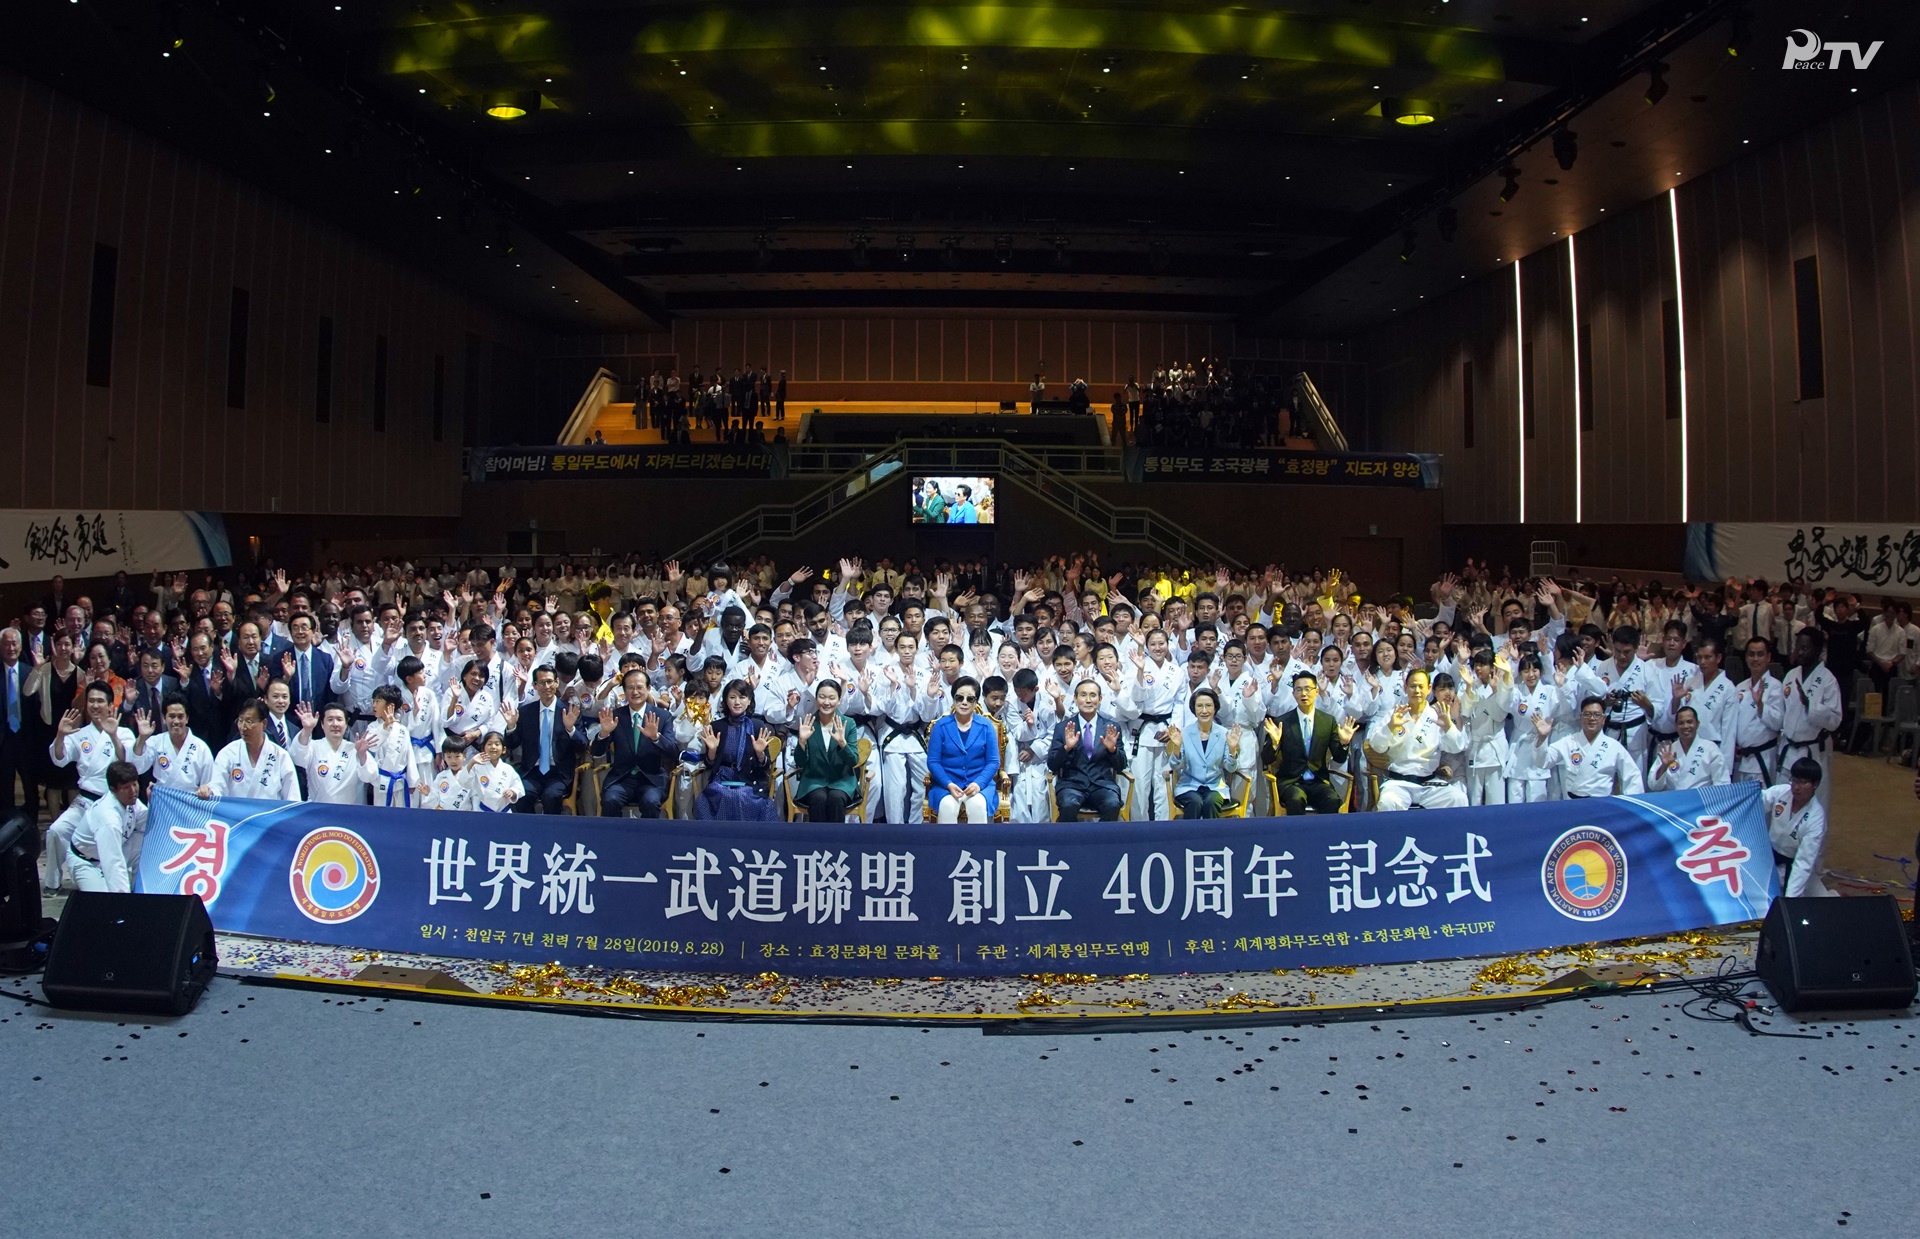 世界平和統一武道連盟40周年記念式 (2019.8.28) 孝情文和苑